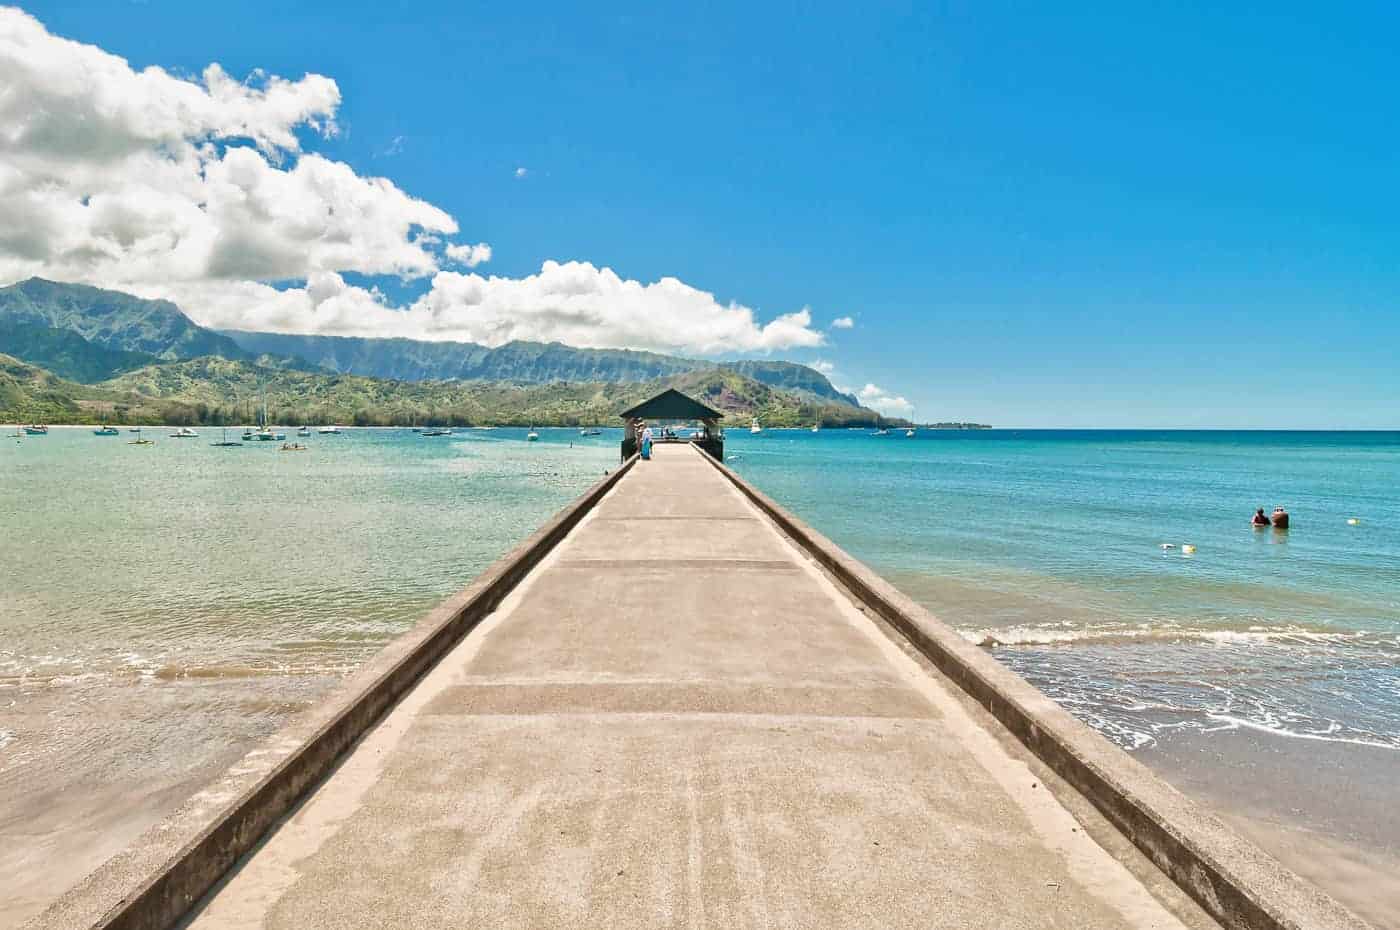 kauai itinerary travel guide 4